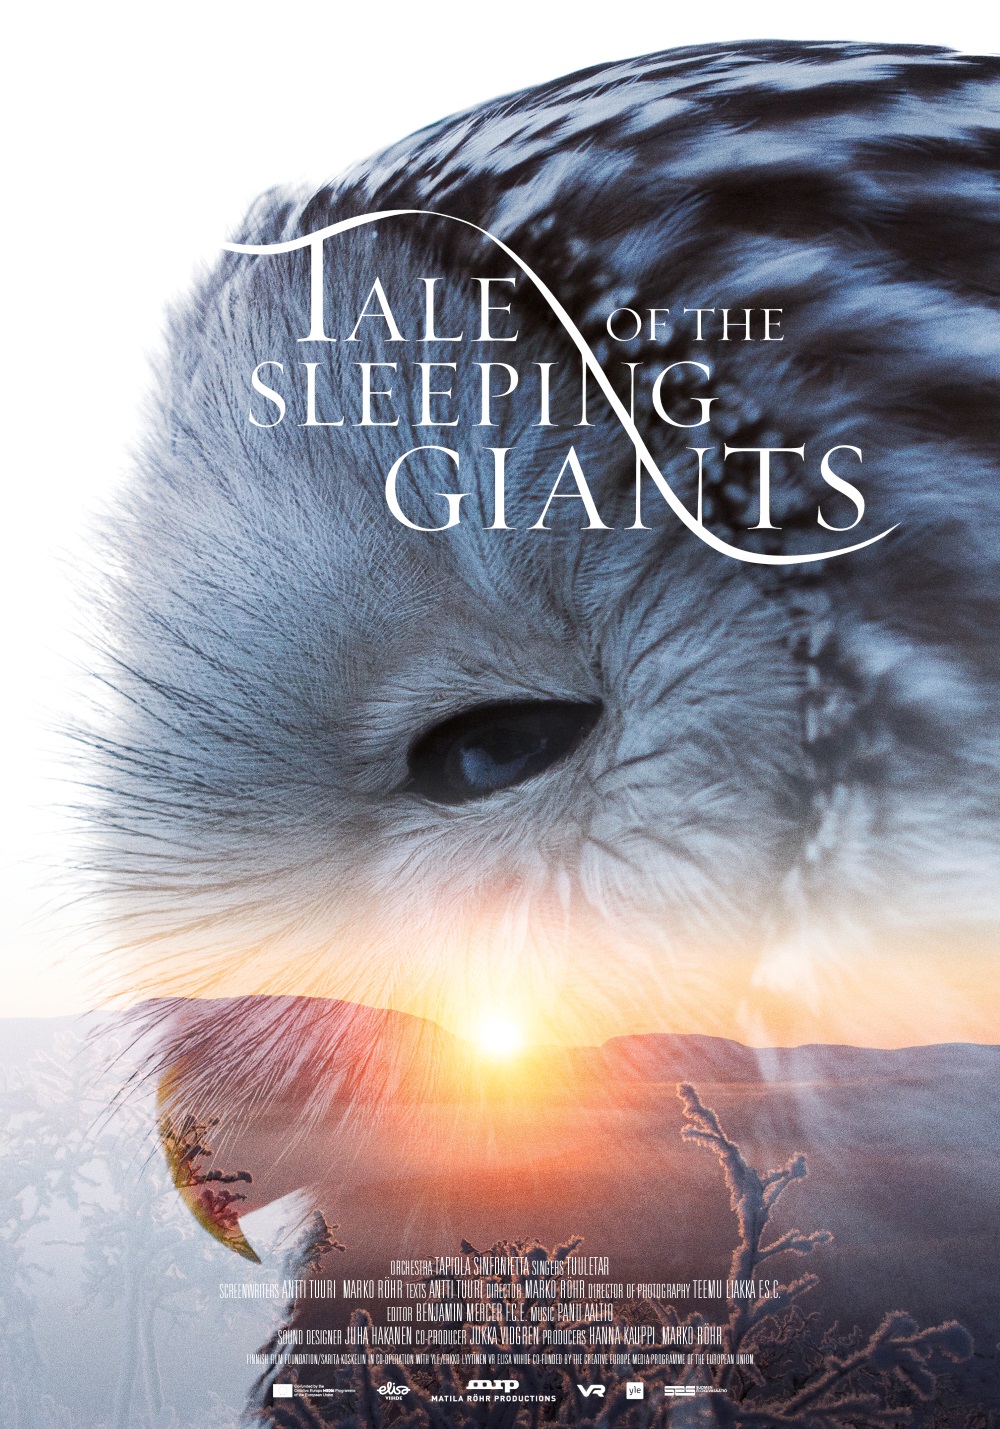 The Tale of Sleeping Giants